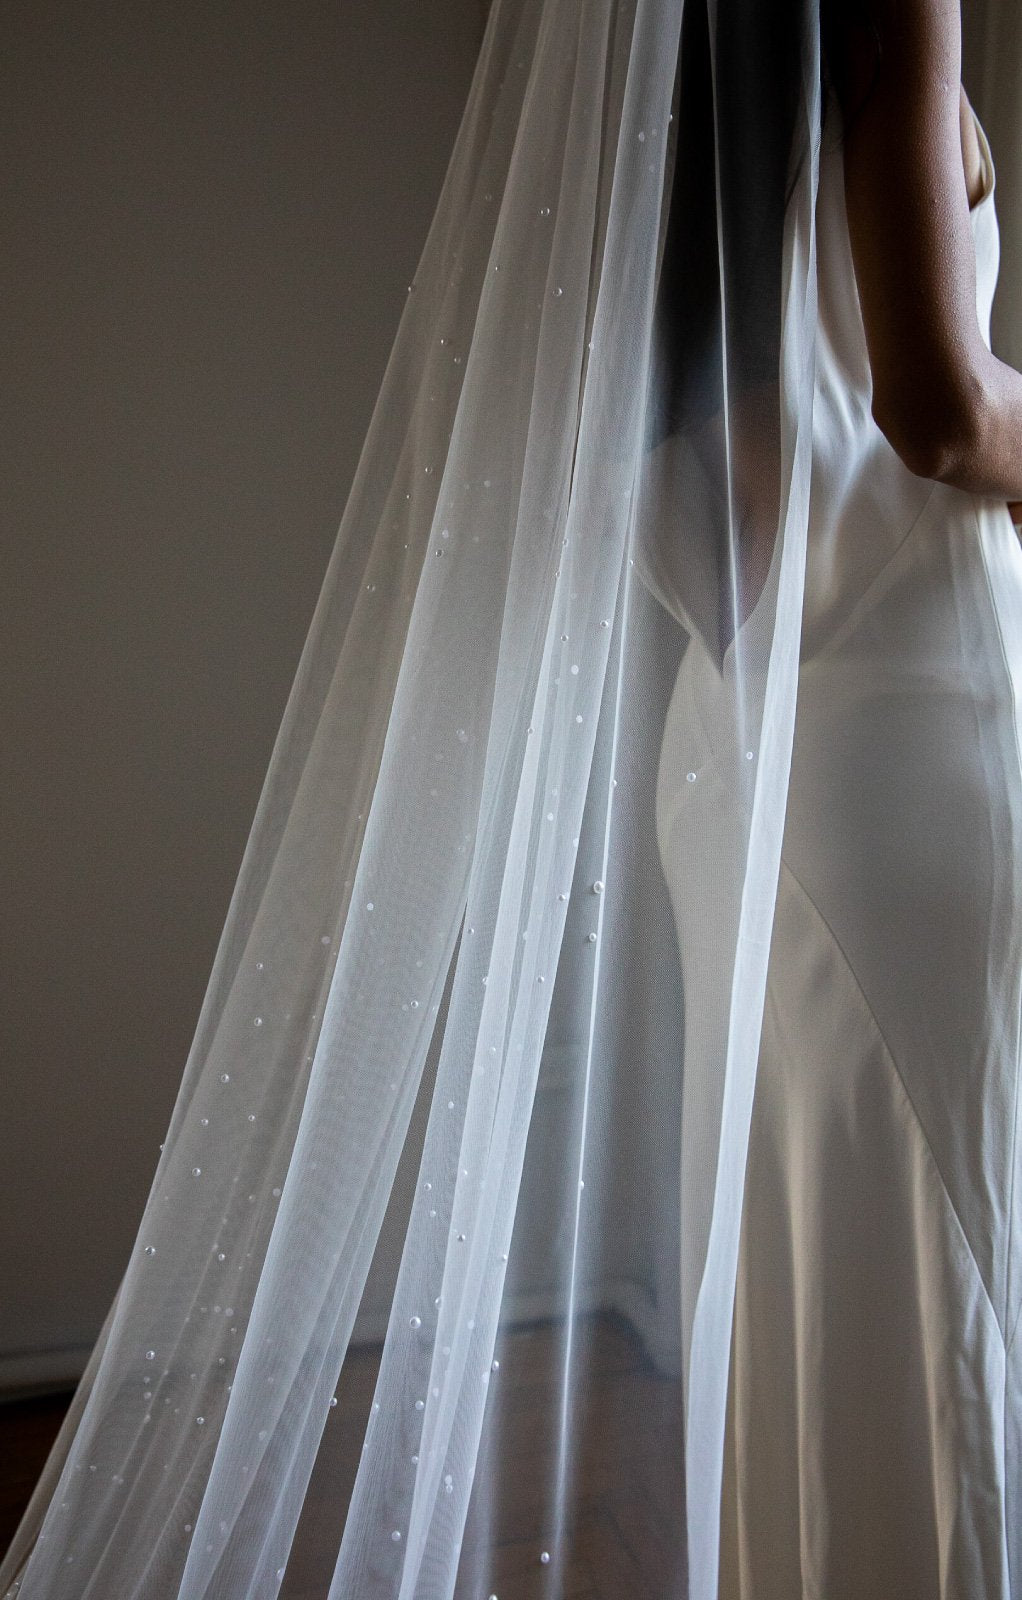 Kennedy Pearl Embellished Wedding Veil